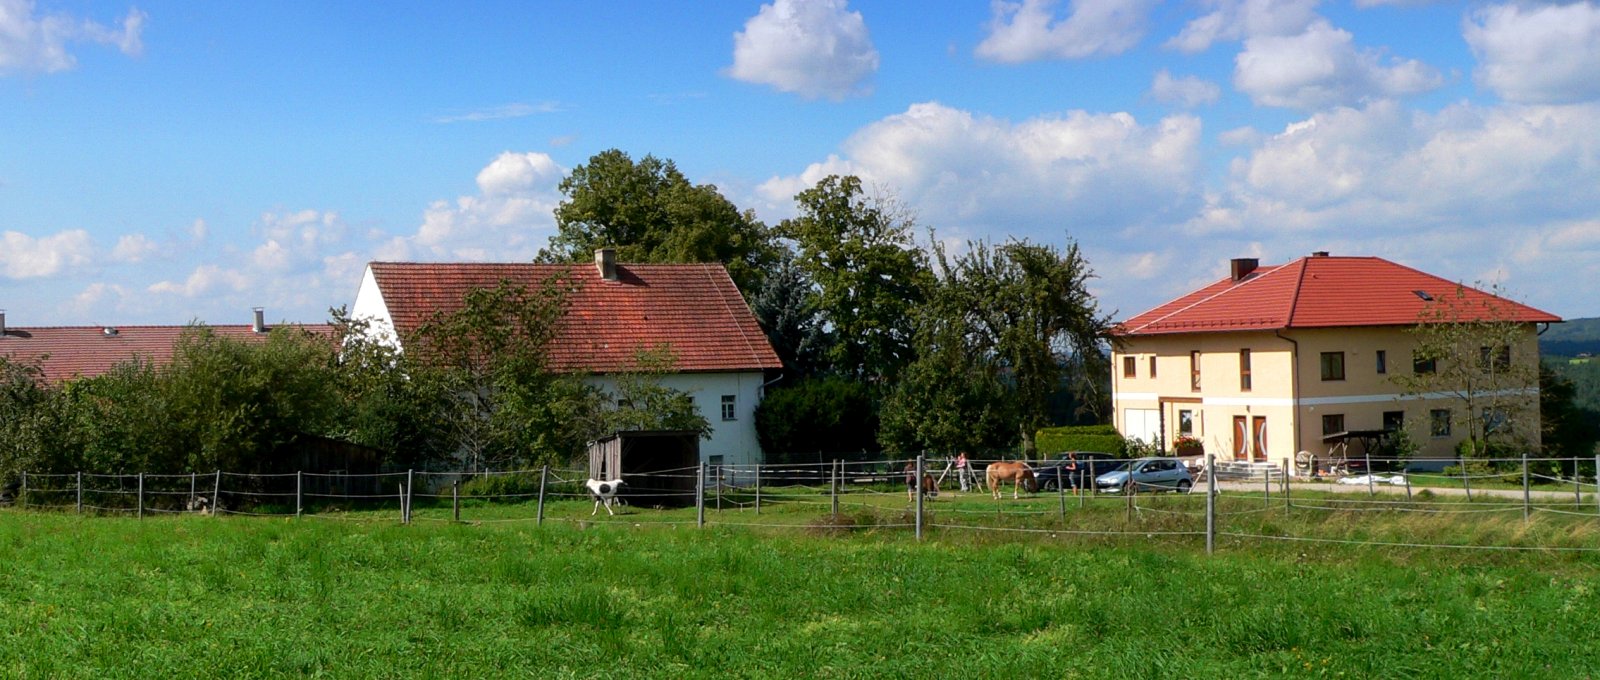 Bauernhof Handlhof in Walderbach – Kontakt